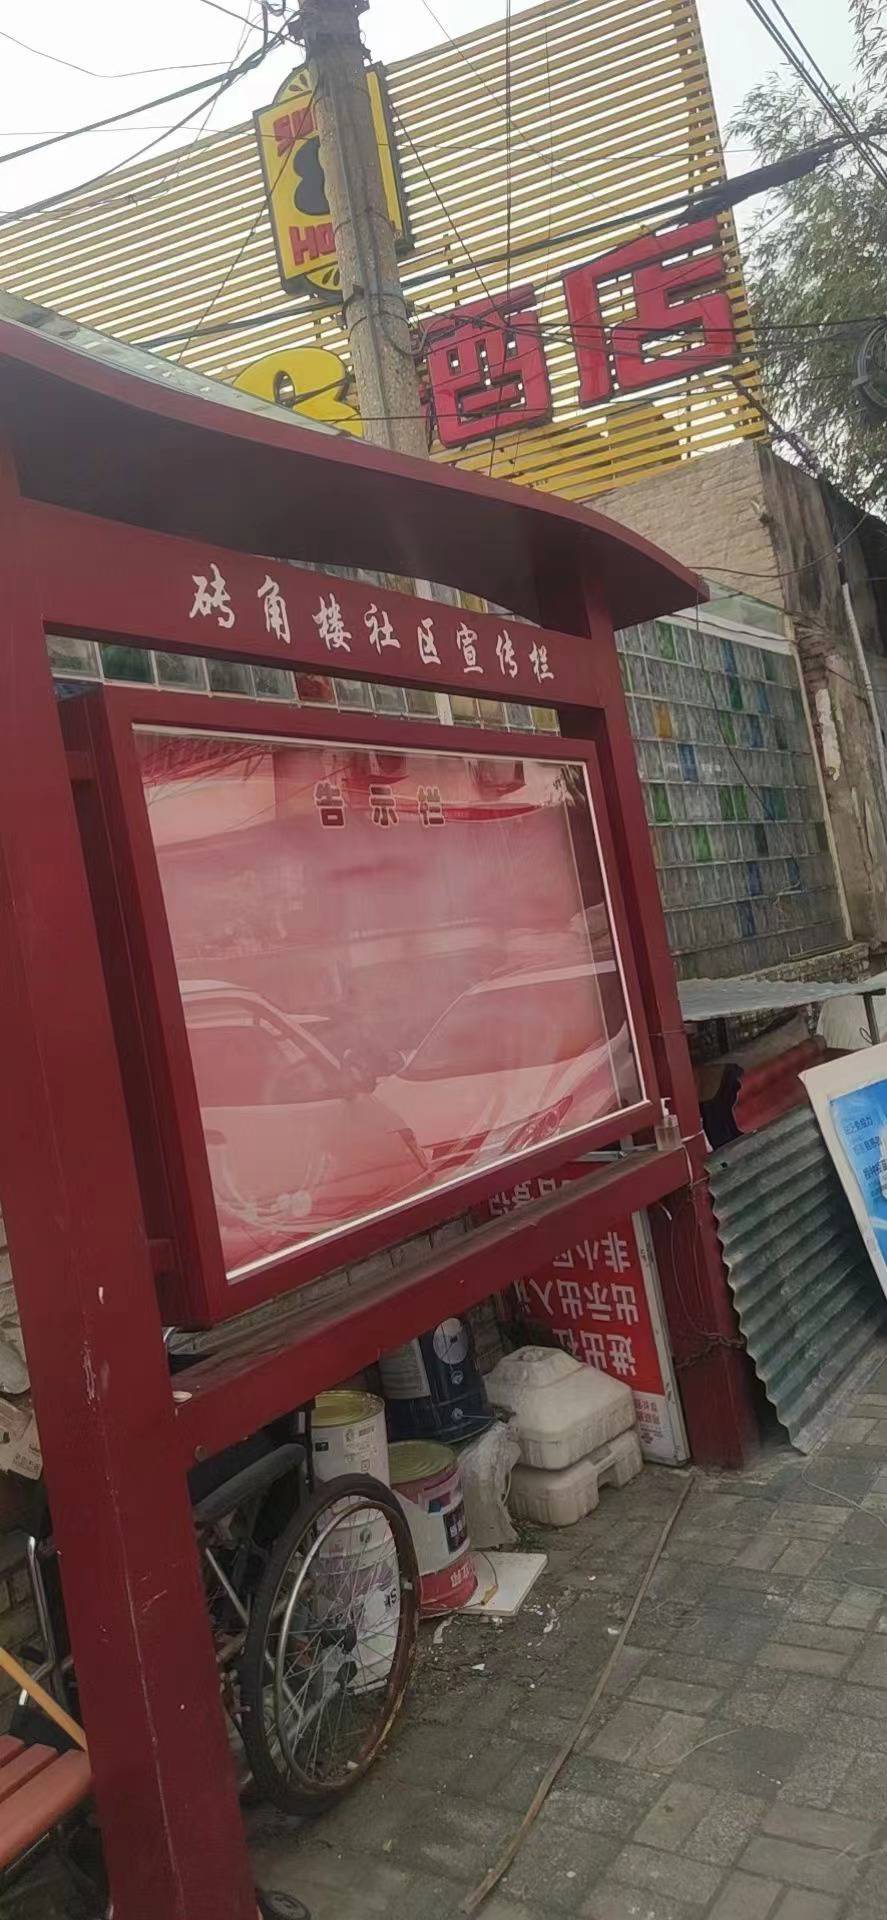 北京朝阳区十里河加工定做不锈钢宣传栏订做不锈钢广告牌8339O292